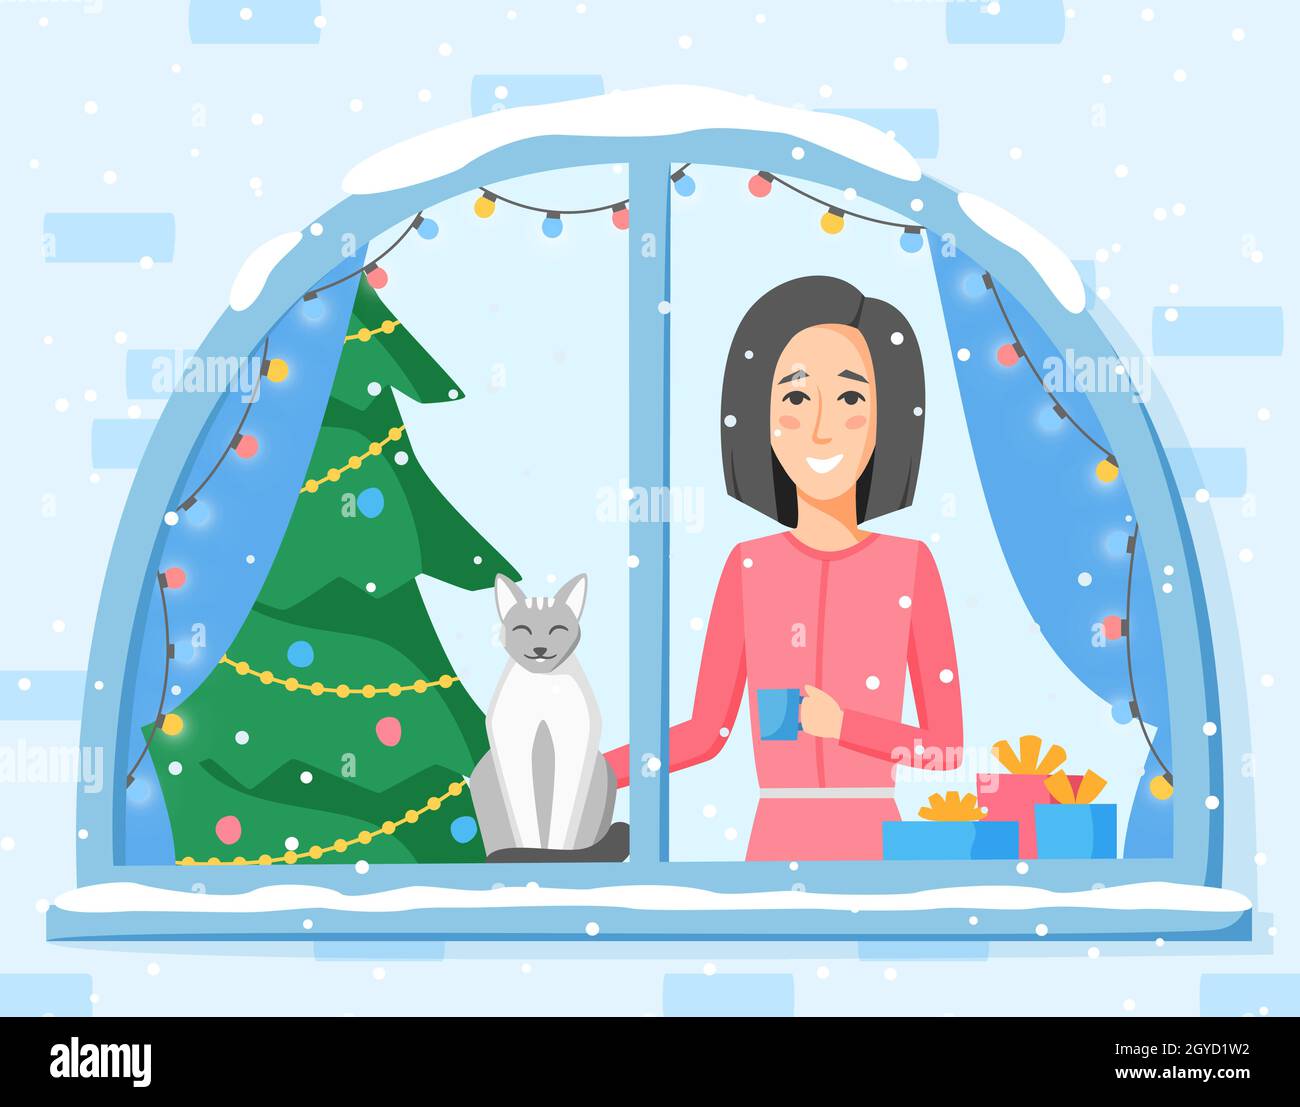 Femme debout dans une fenêtre décorée avec une guirlande de lampes.Fille, chat et arbre de Noël.Illustration des vacances d'hiver dans un style plat Illustration de Vecteur